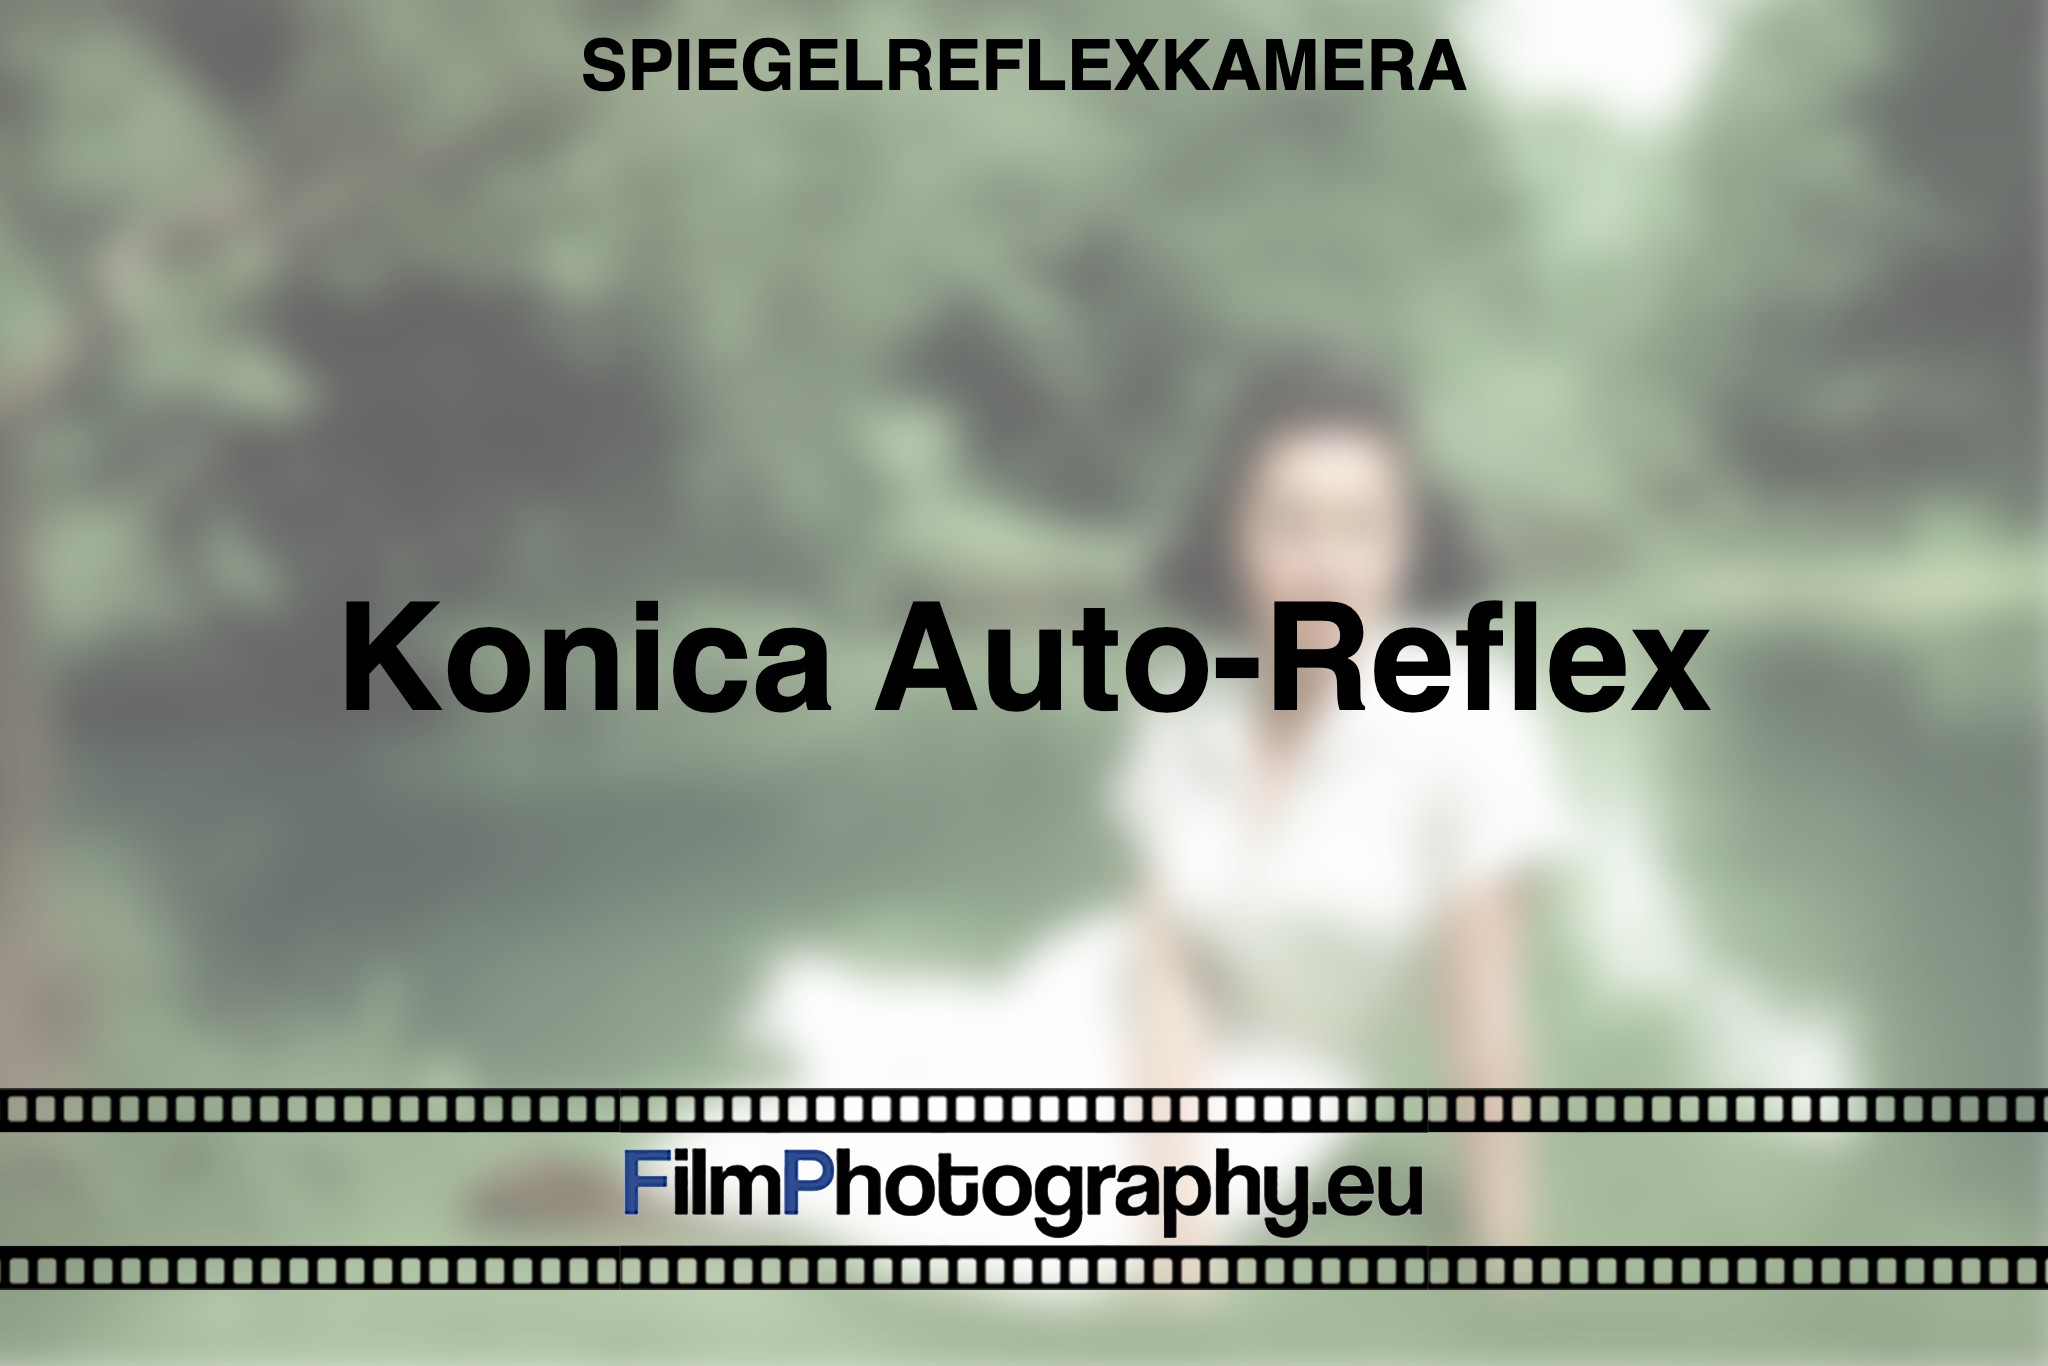 konica-auto-reflex-spiegelreflexkamera-bnv